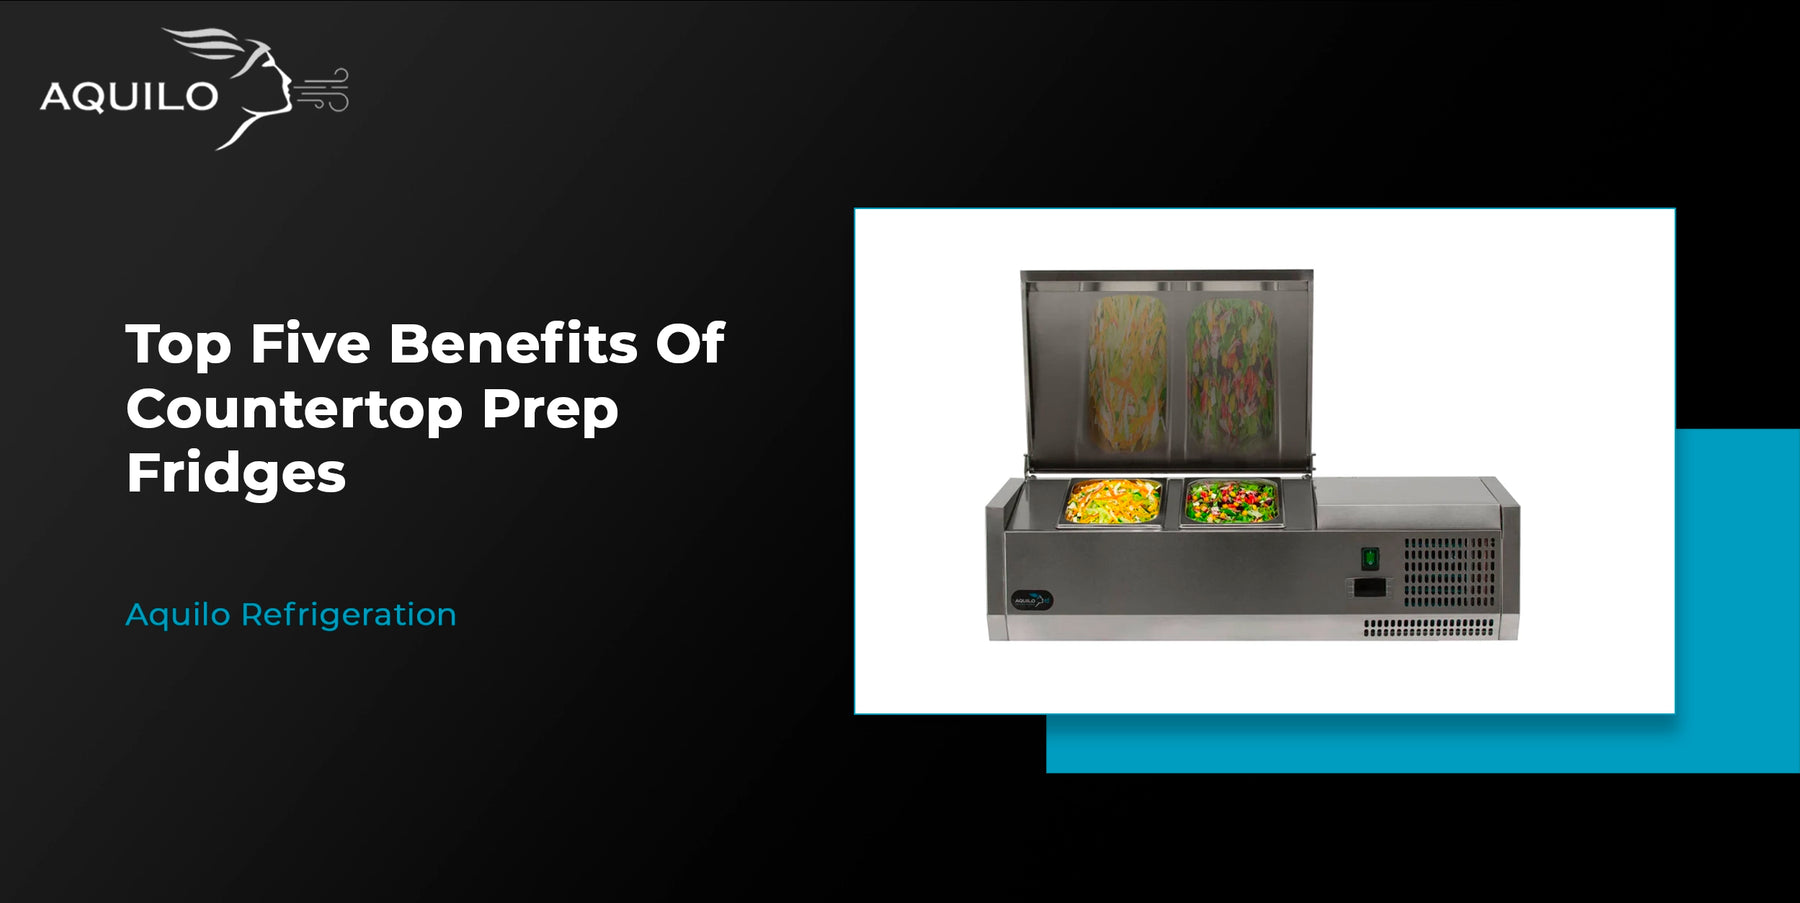 Top 5 Benefits Of Countertop Prep Fridges